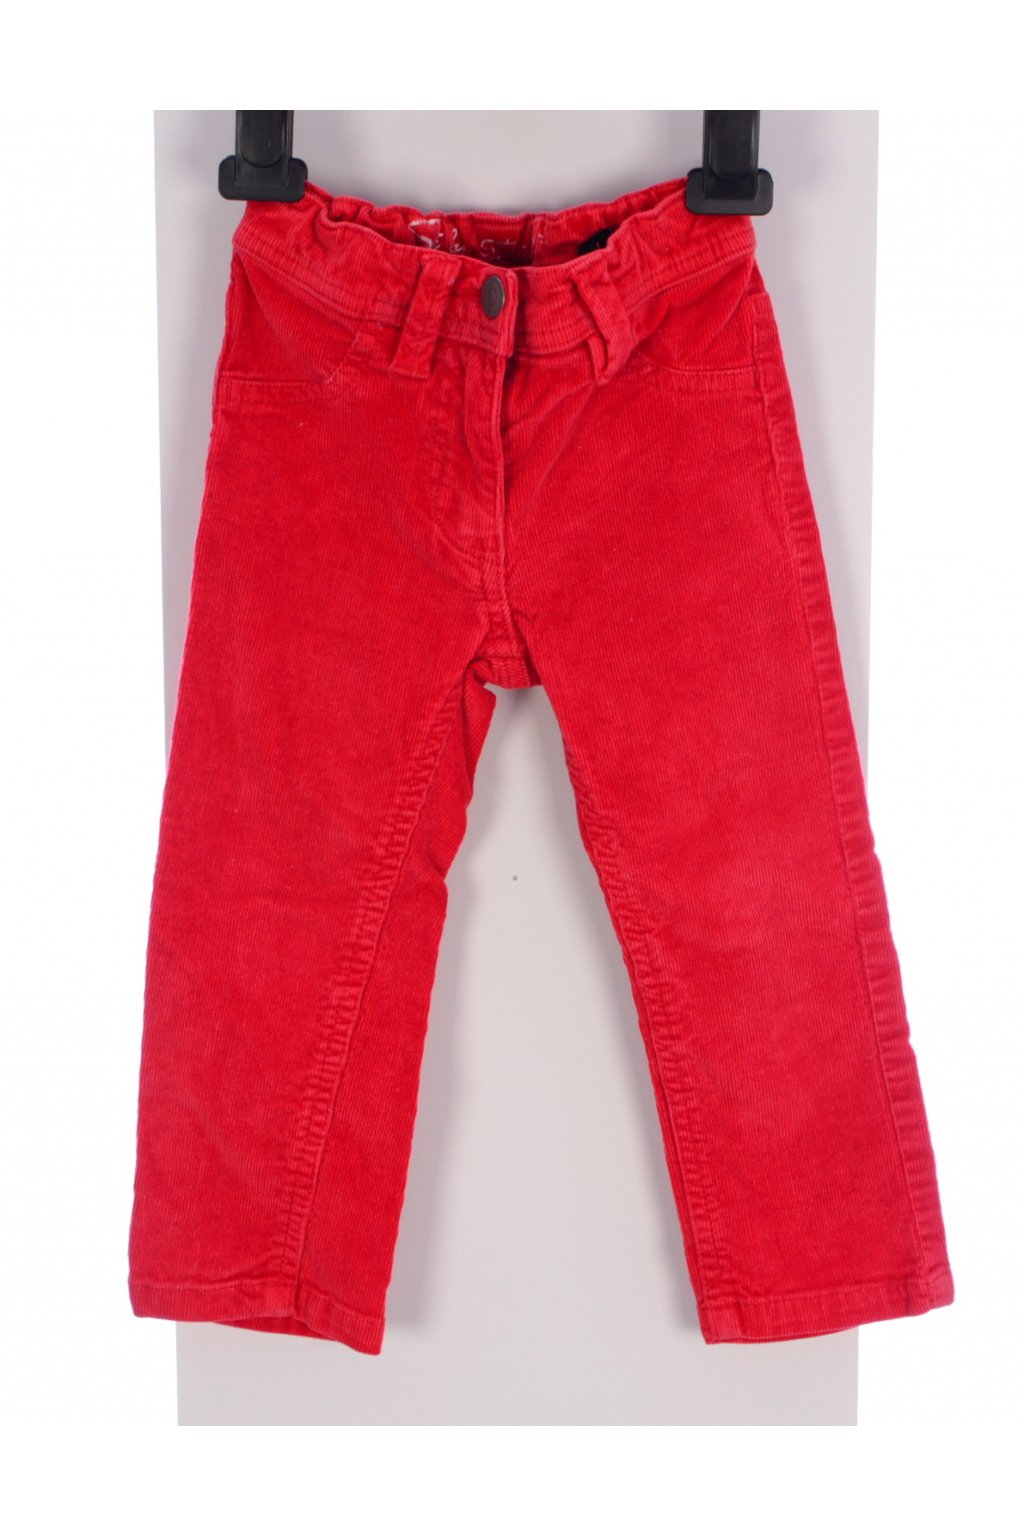 Kalhoty manšestrové vel 92 červené